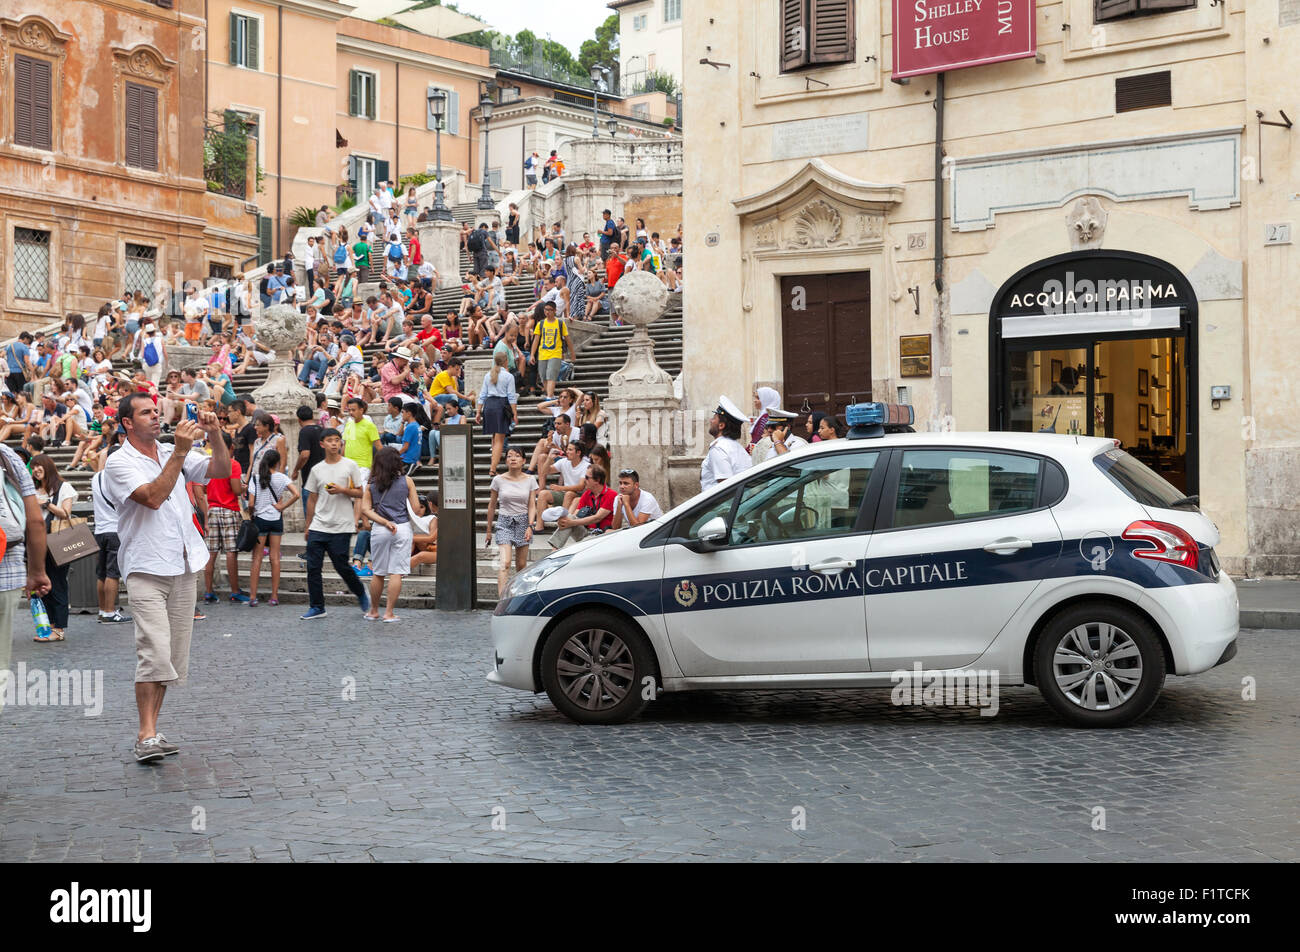 Roma, Italia - 07 agosto 2015: Bianco auto della polizia si erge sulla strada vicino a Piazza di scale nel centro storico della città di Roma Foto Stock